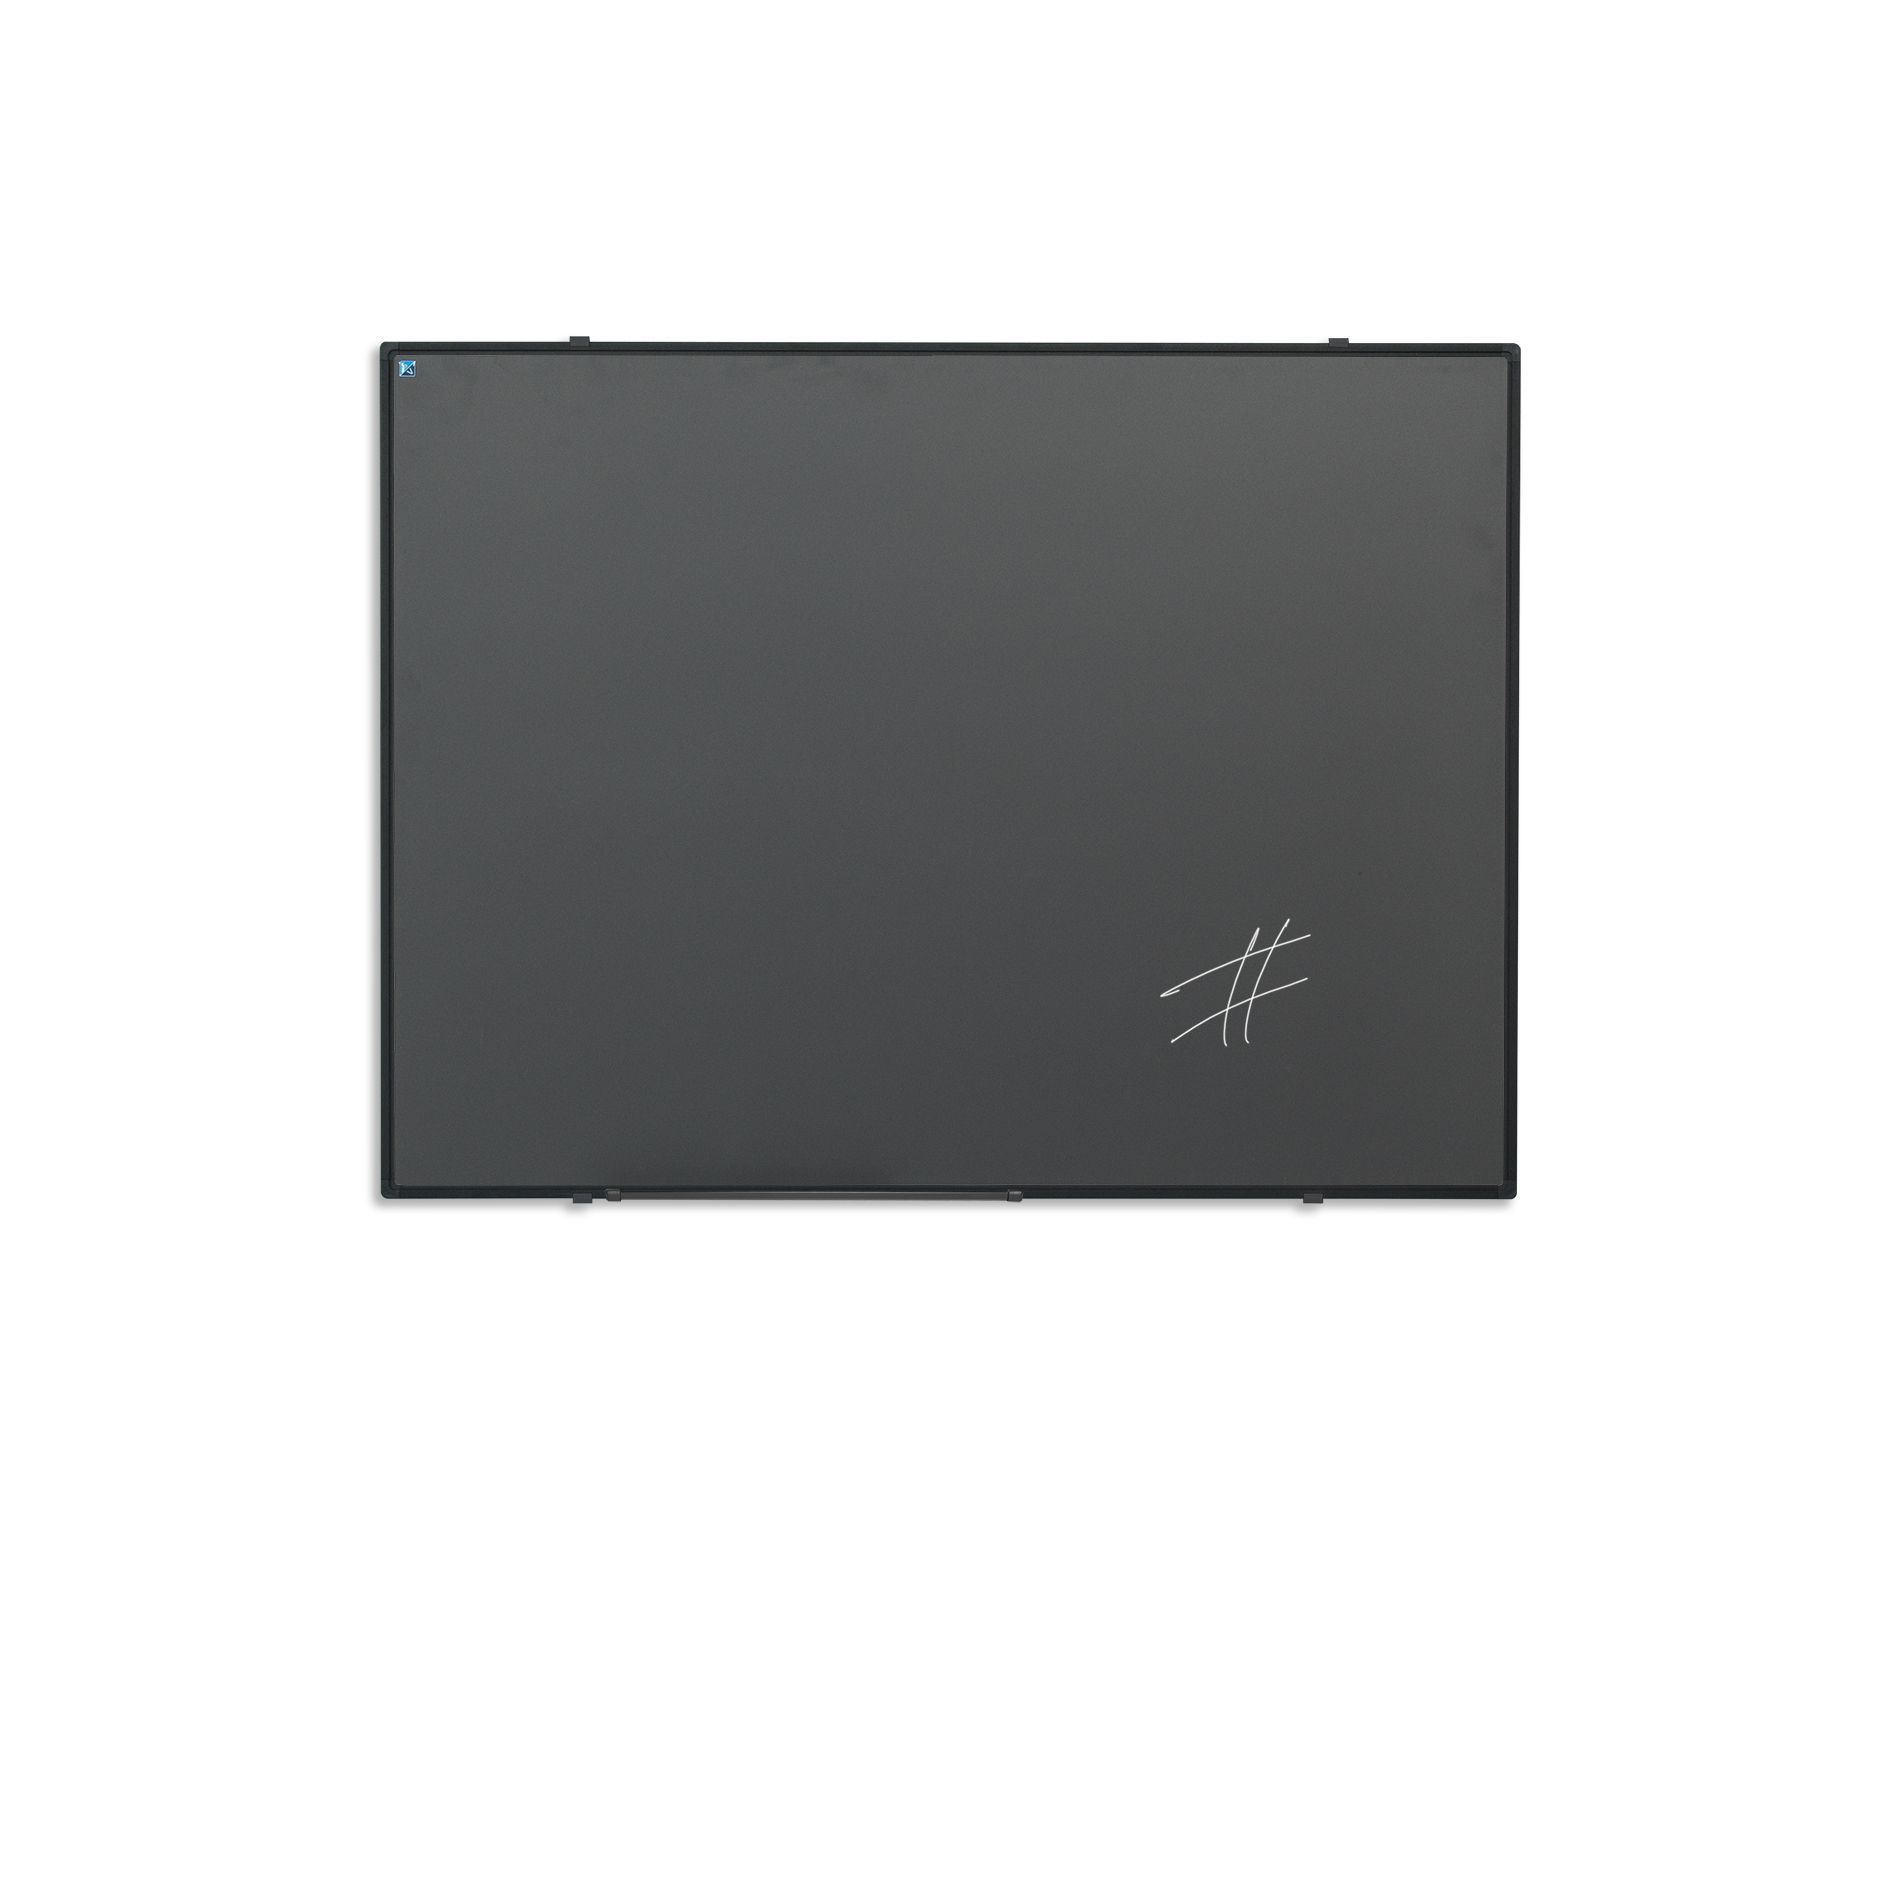 Krijtbord zwart Softline profiel 8mm, emailstaal grijs - 100x150 cm